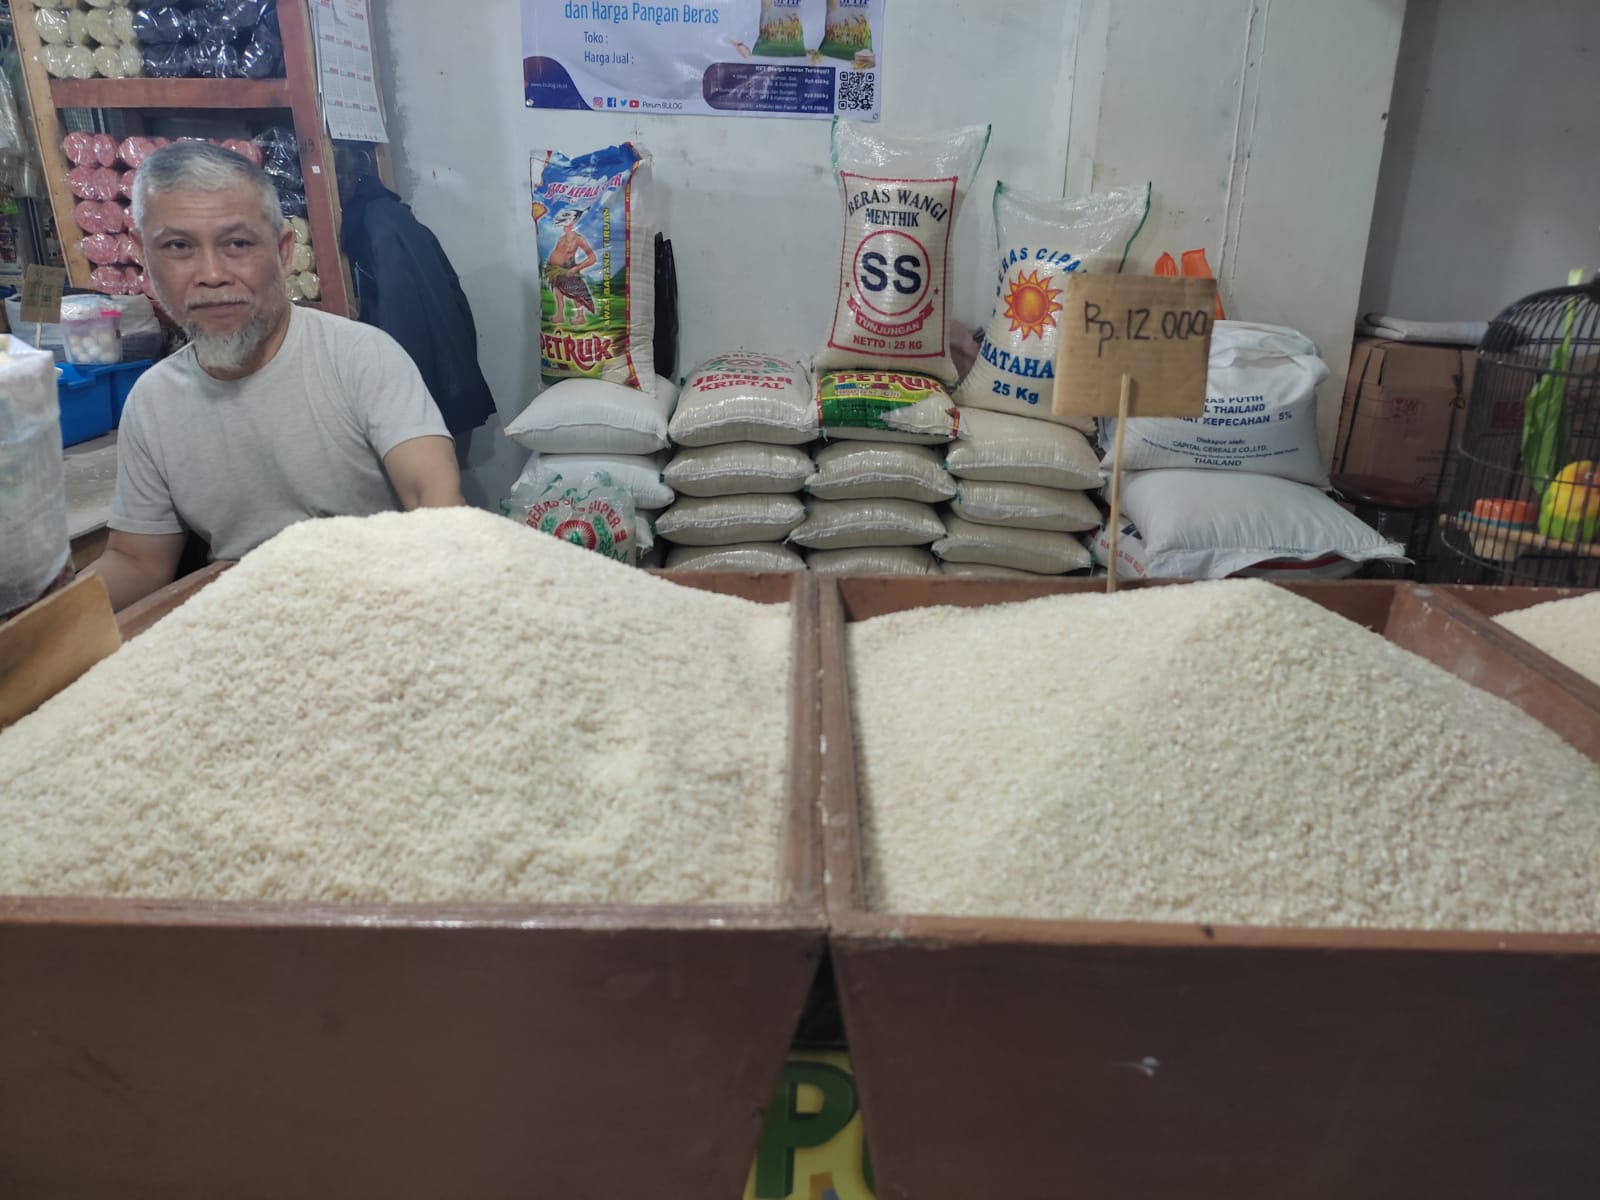 Harga beras di Kota Bandung melambung tinggi akibat minimnya pasokan beras yang disuplay ke pasar tradisional. (SADAM HUSEN SOLEH RAMDHANI/JABAR EKSPRES)